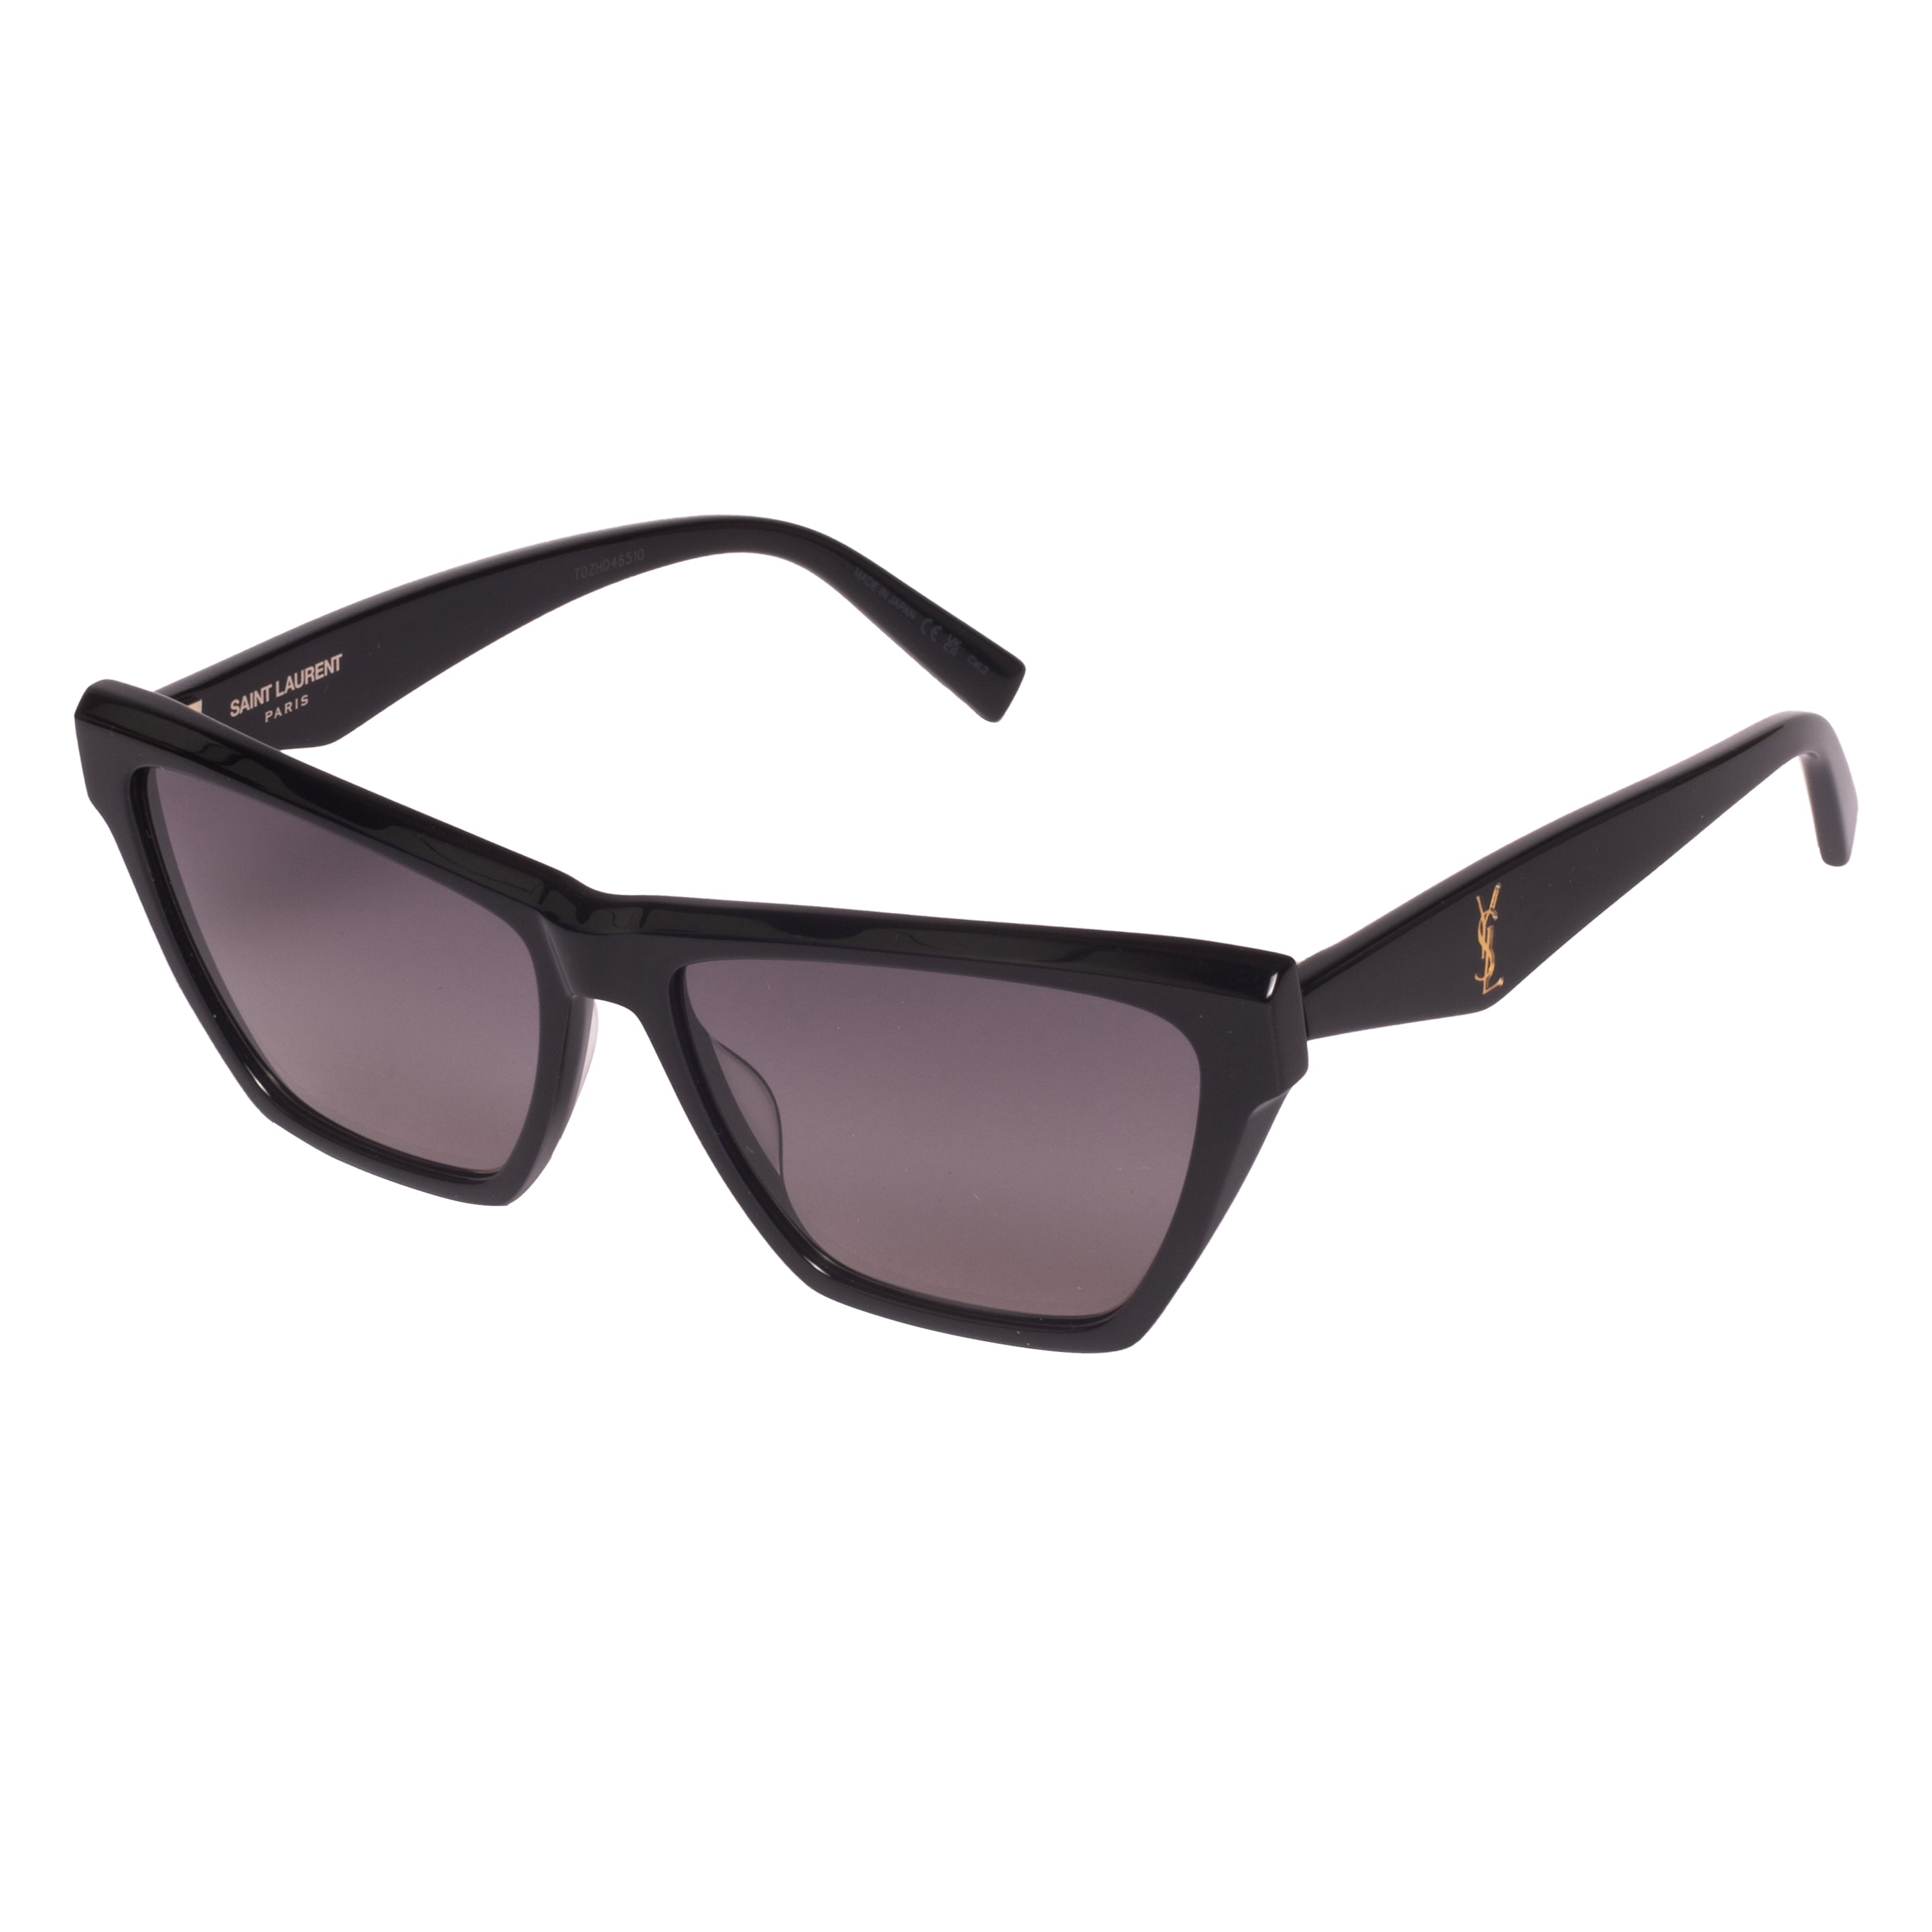 Saint Laurent-SL M103-58-001 Sunglasses - Premium Sunglasses from Saint Laurent - Just Rs. 24100! Shop now at Laxmi Opticians